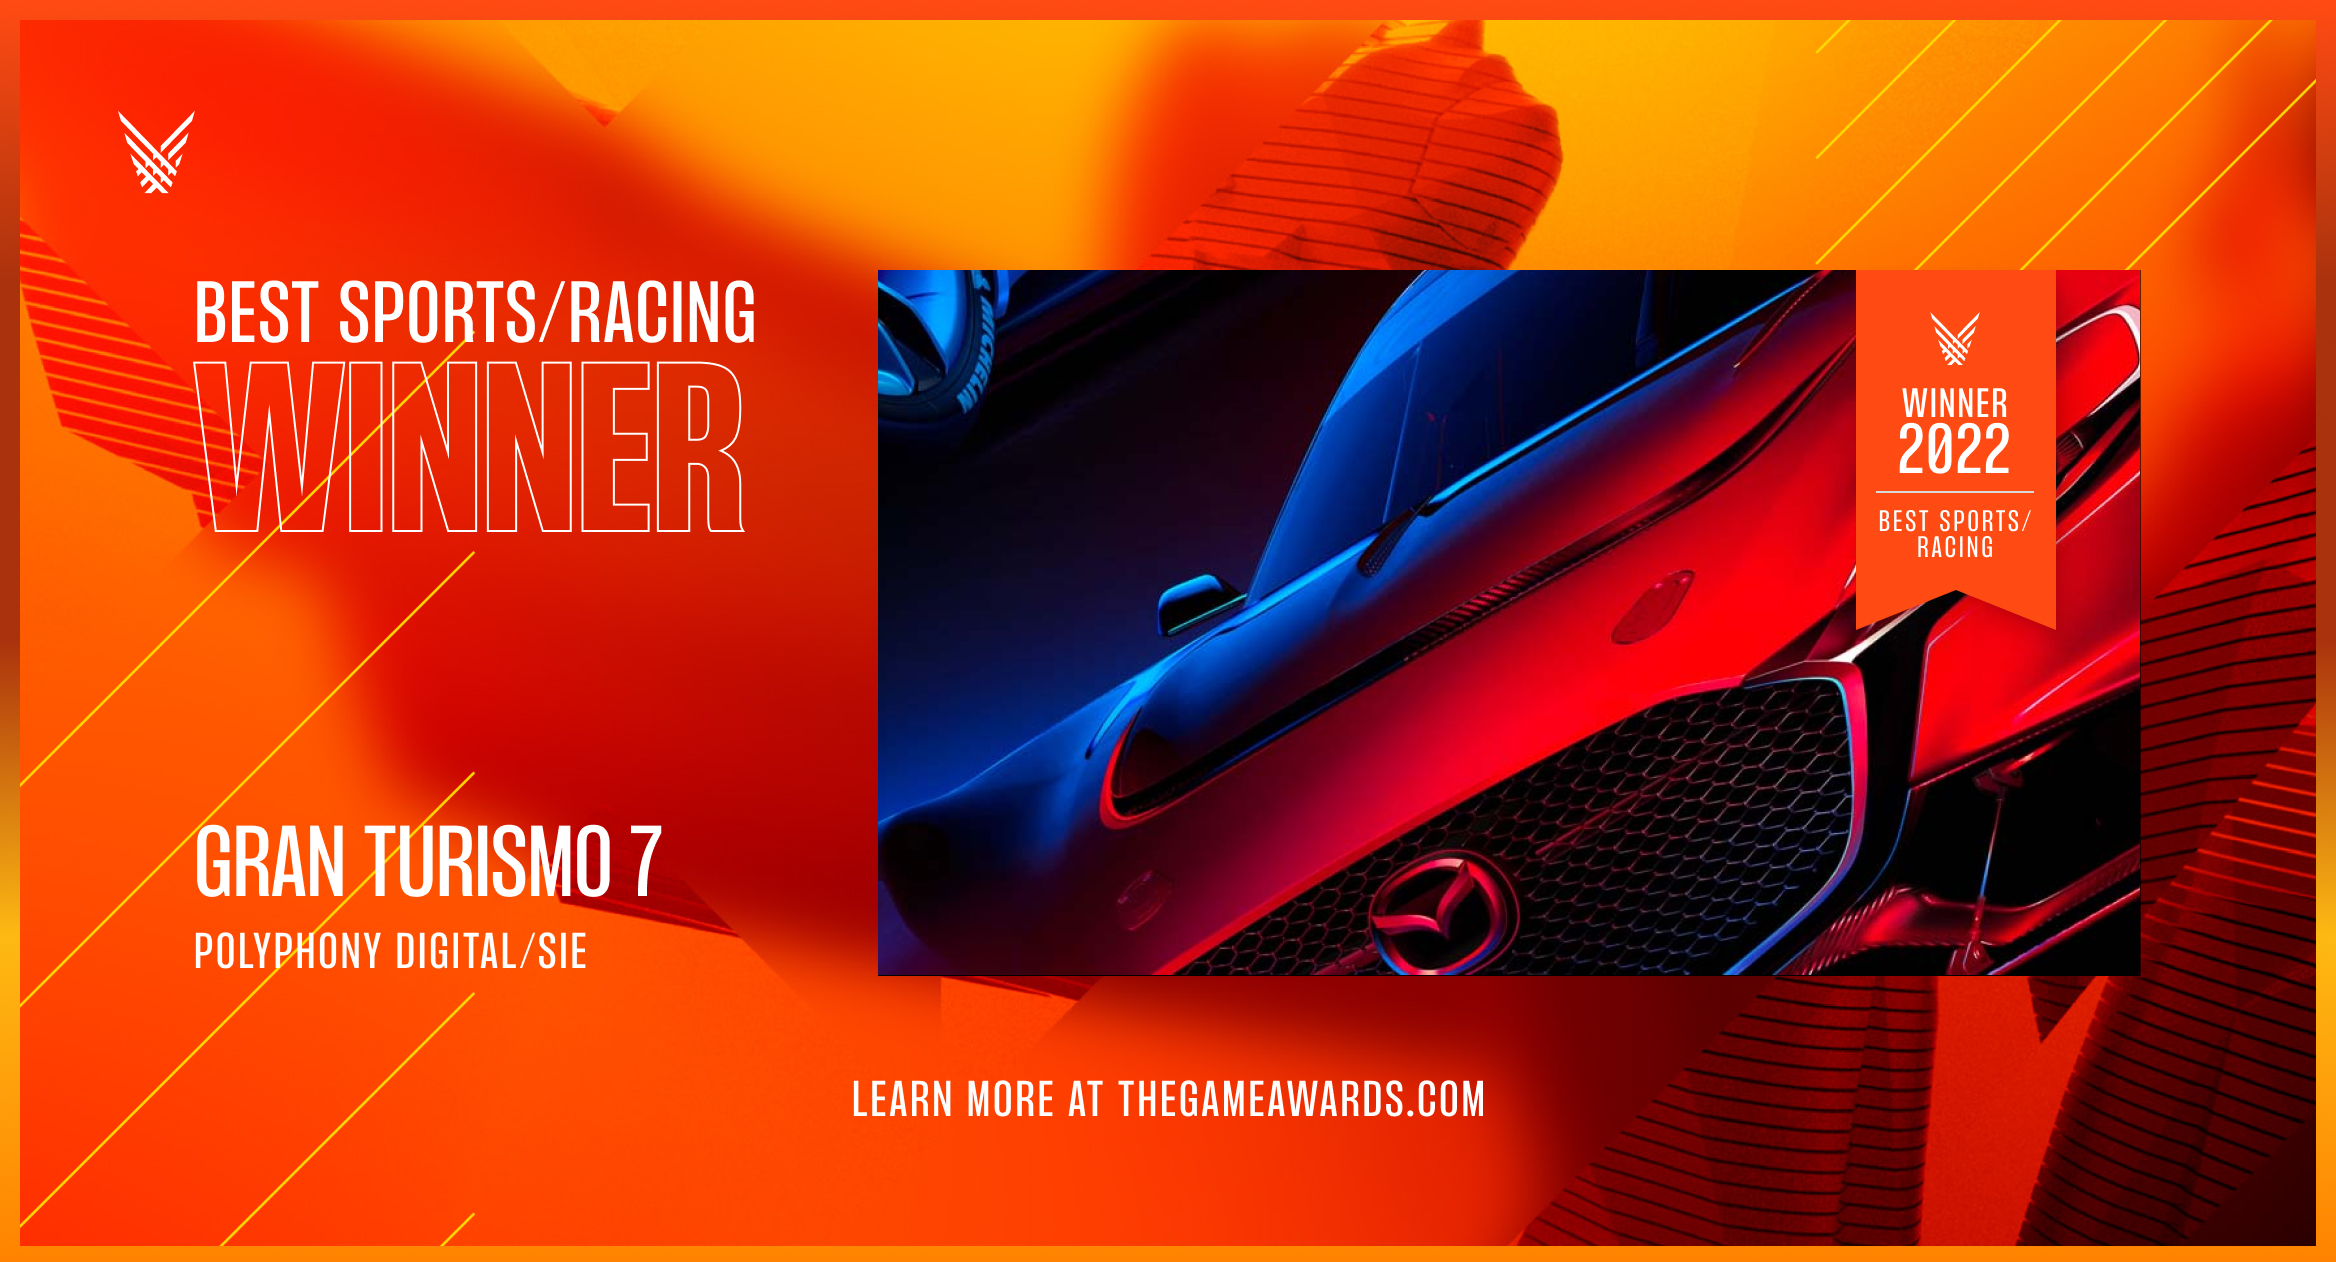 TGA 2022游戏大奖颁奖典礼《GT赛车7》荣获最佳体育/竞速游戏奖